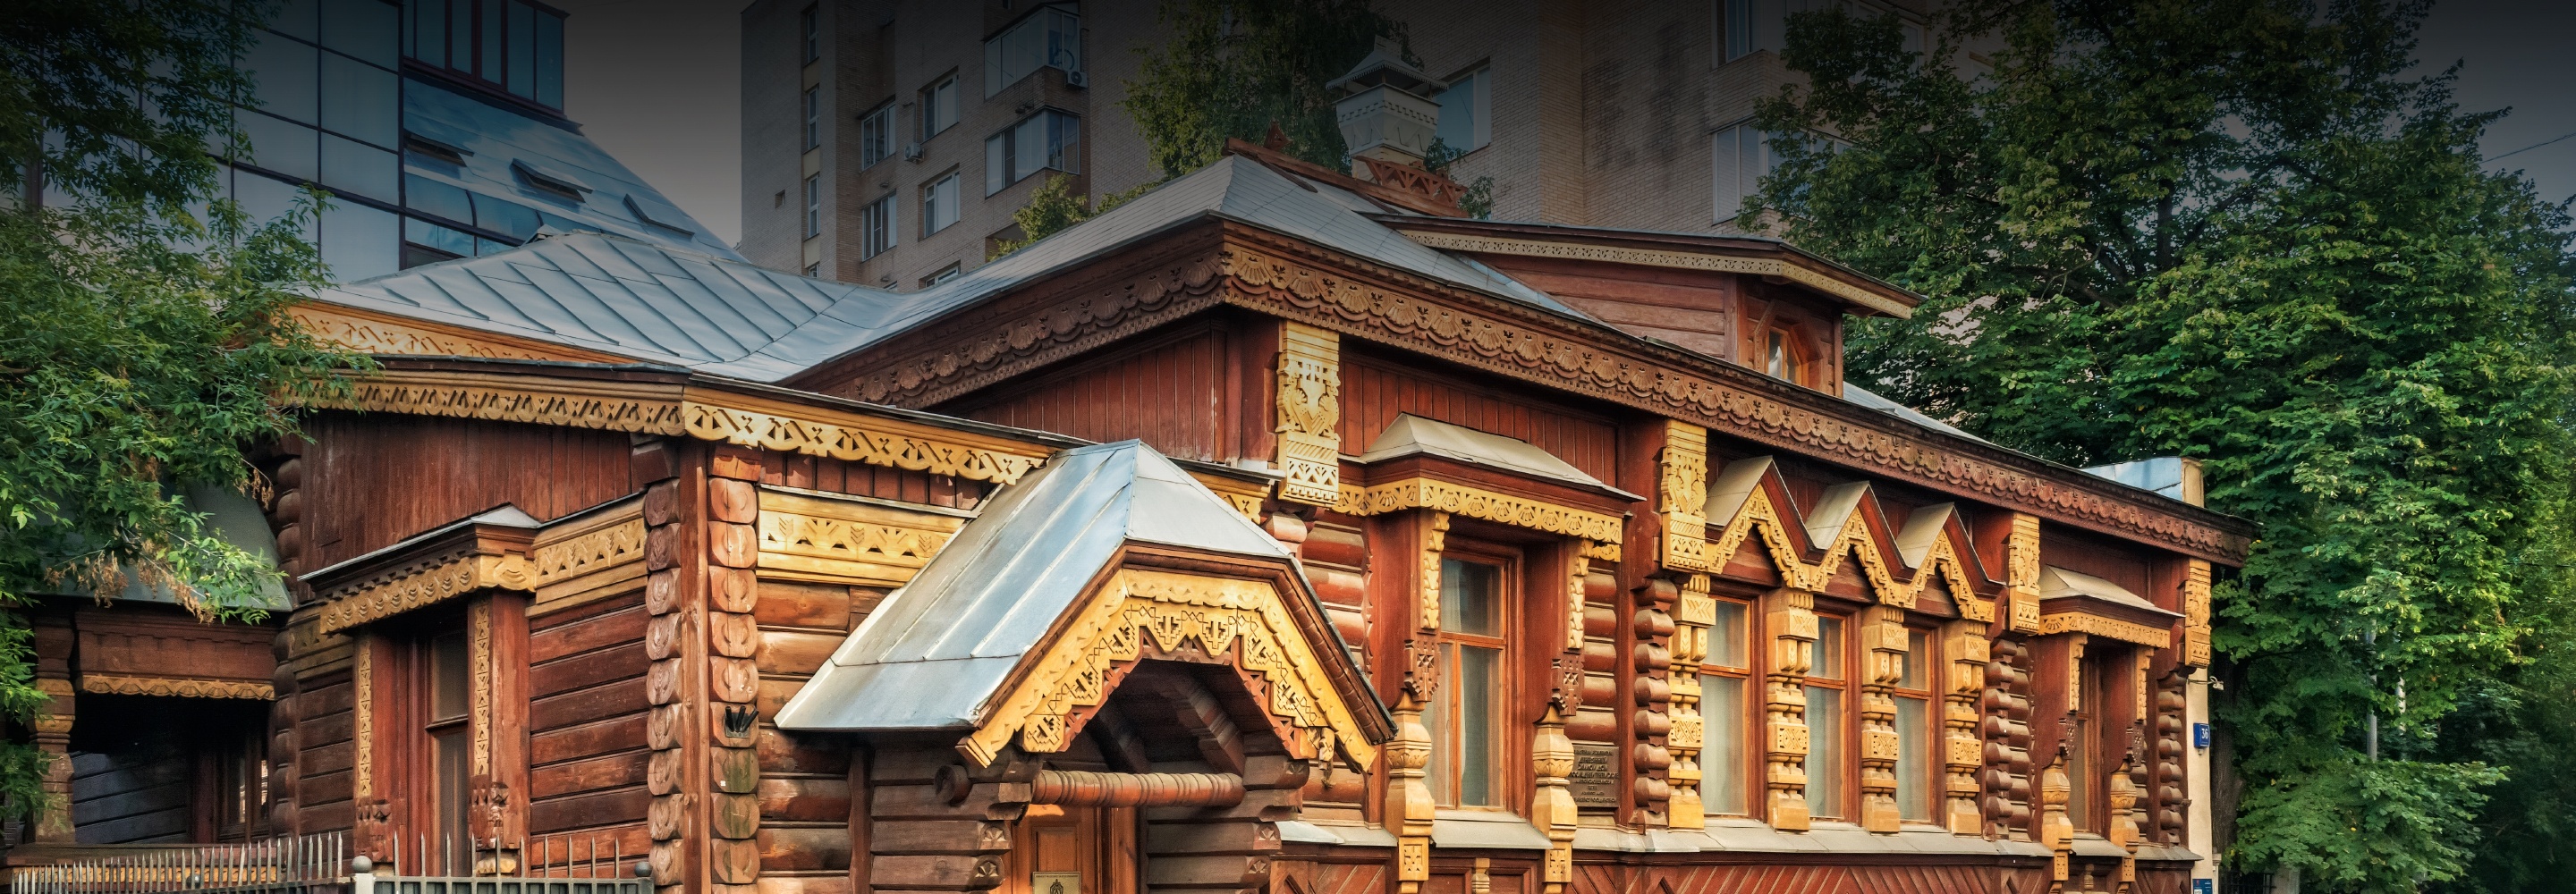 Москва деревянная: 13 великолепных домов, которые нужно увидеть